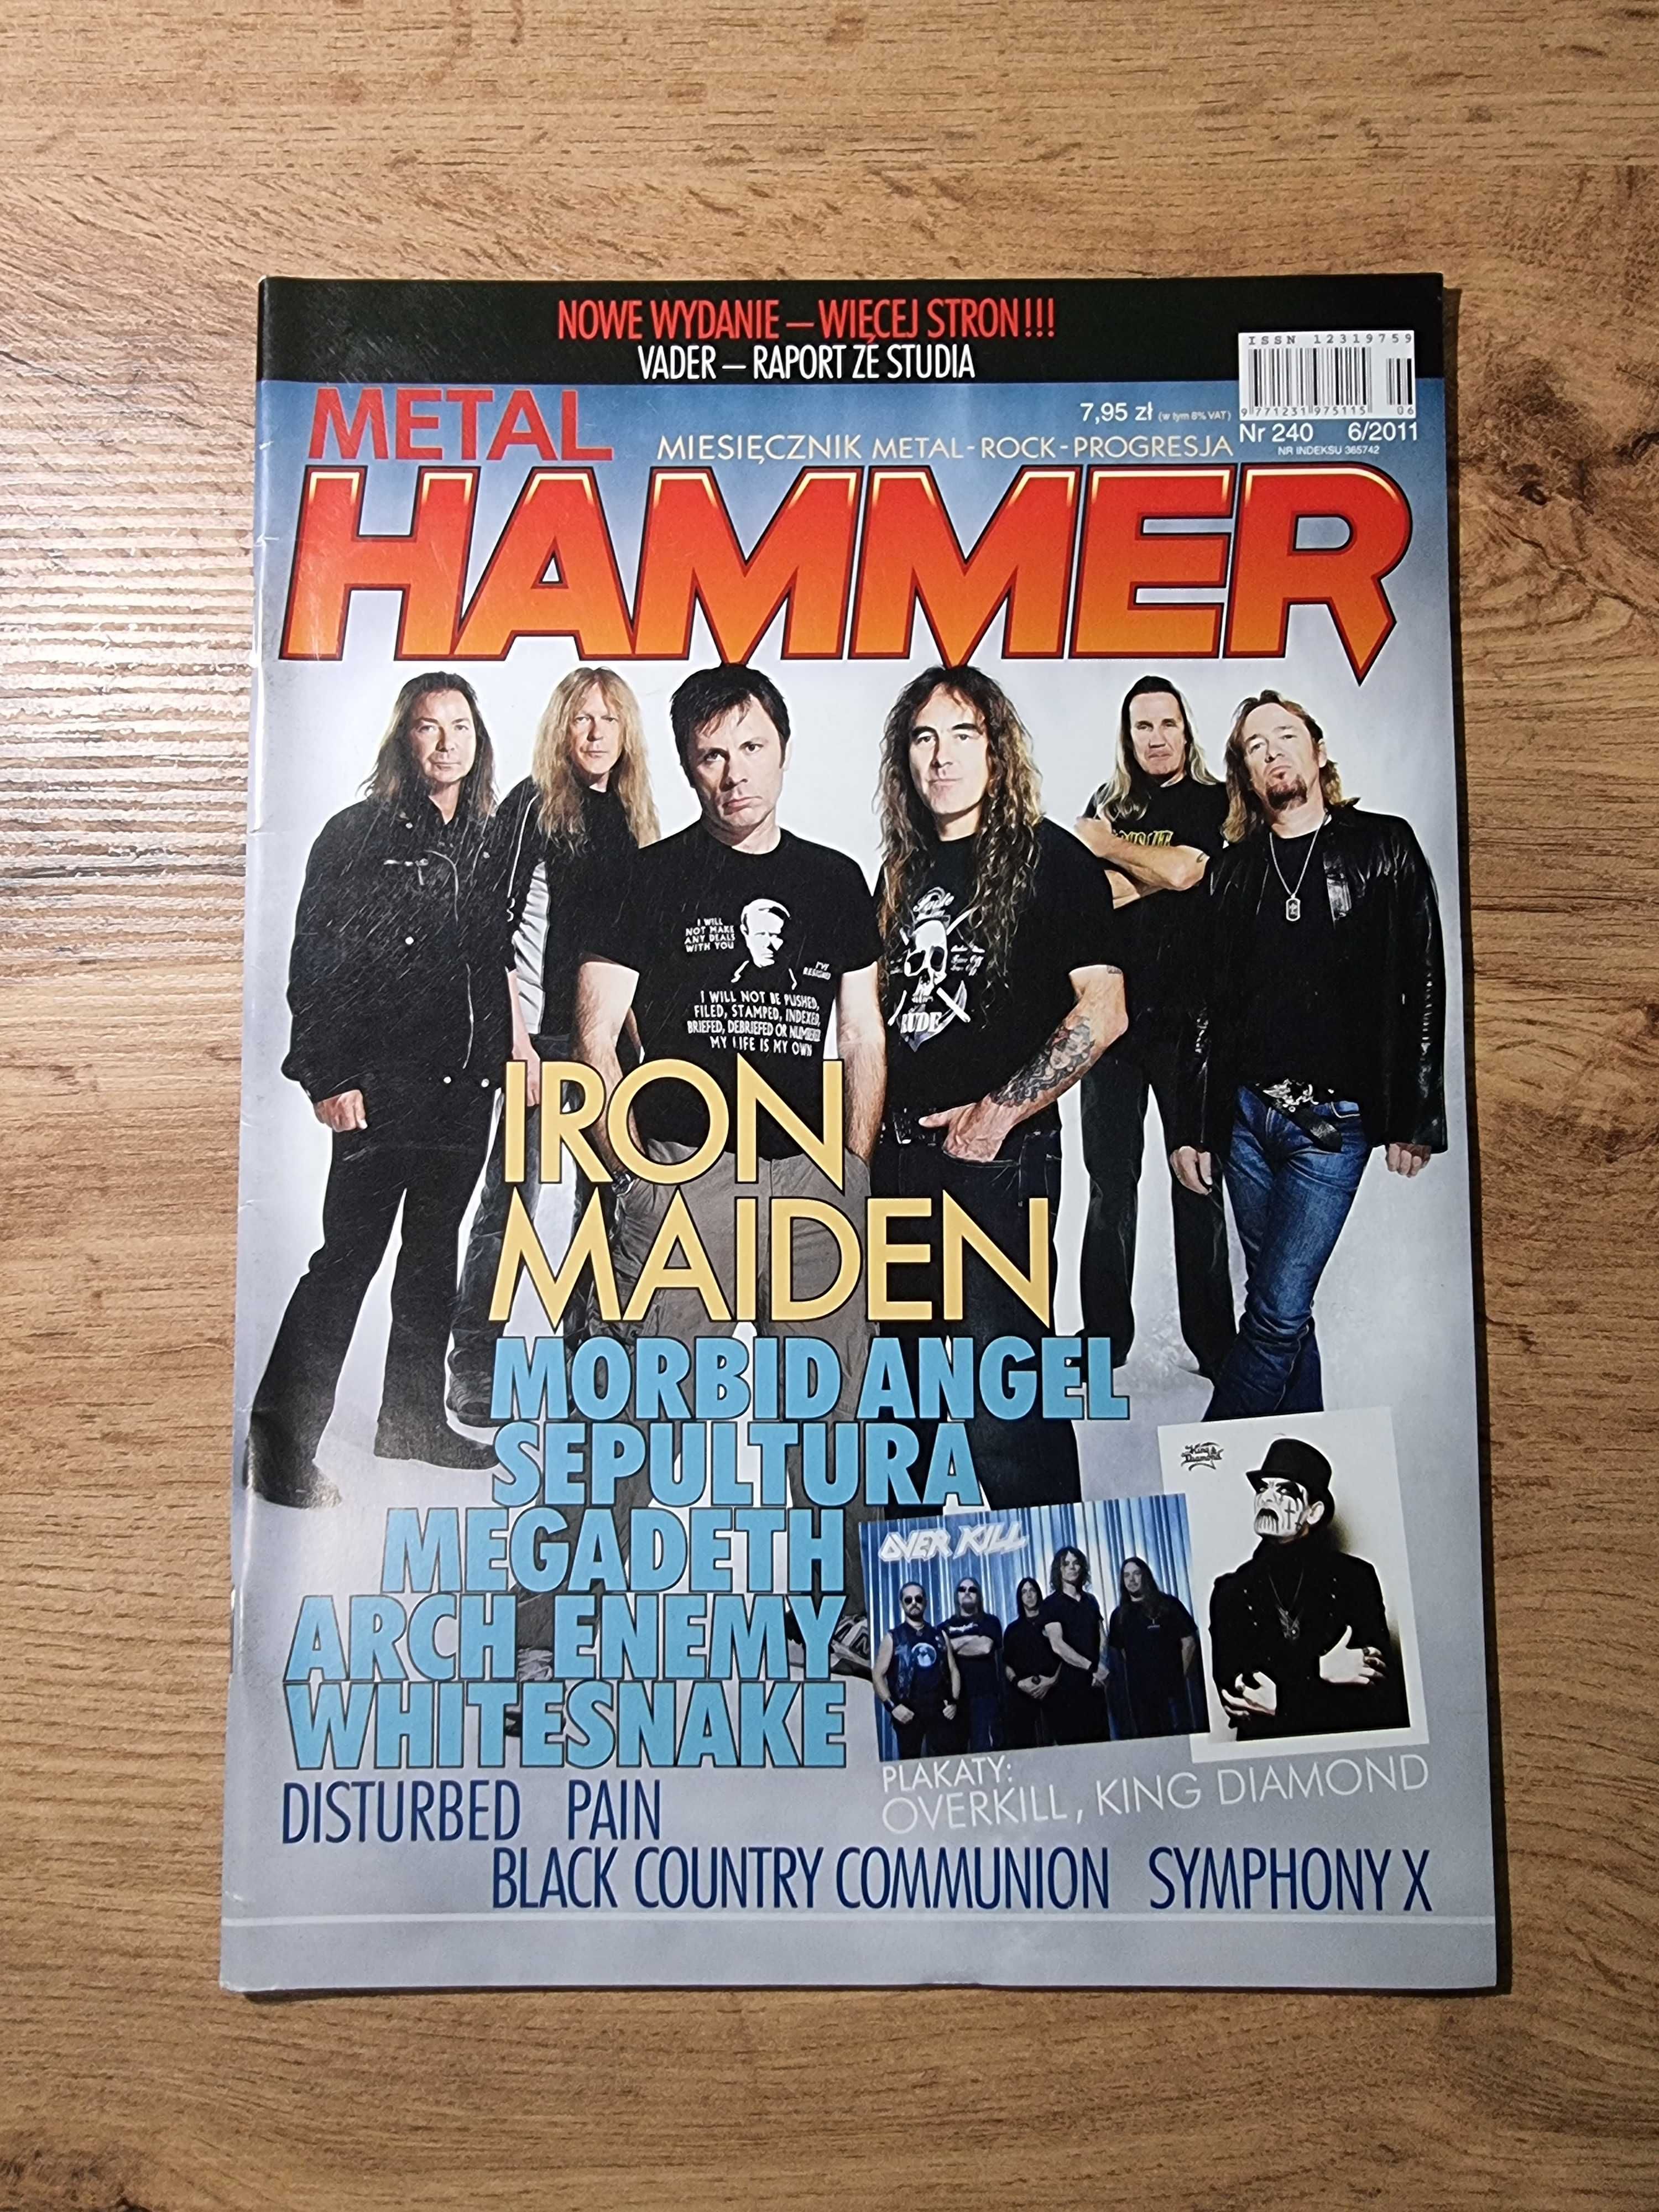 Metal Hammer 2011 - Iron Maiden, Plakaty: Overkill i King Diamond